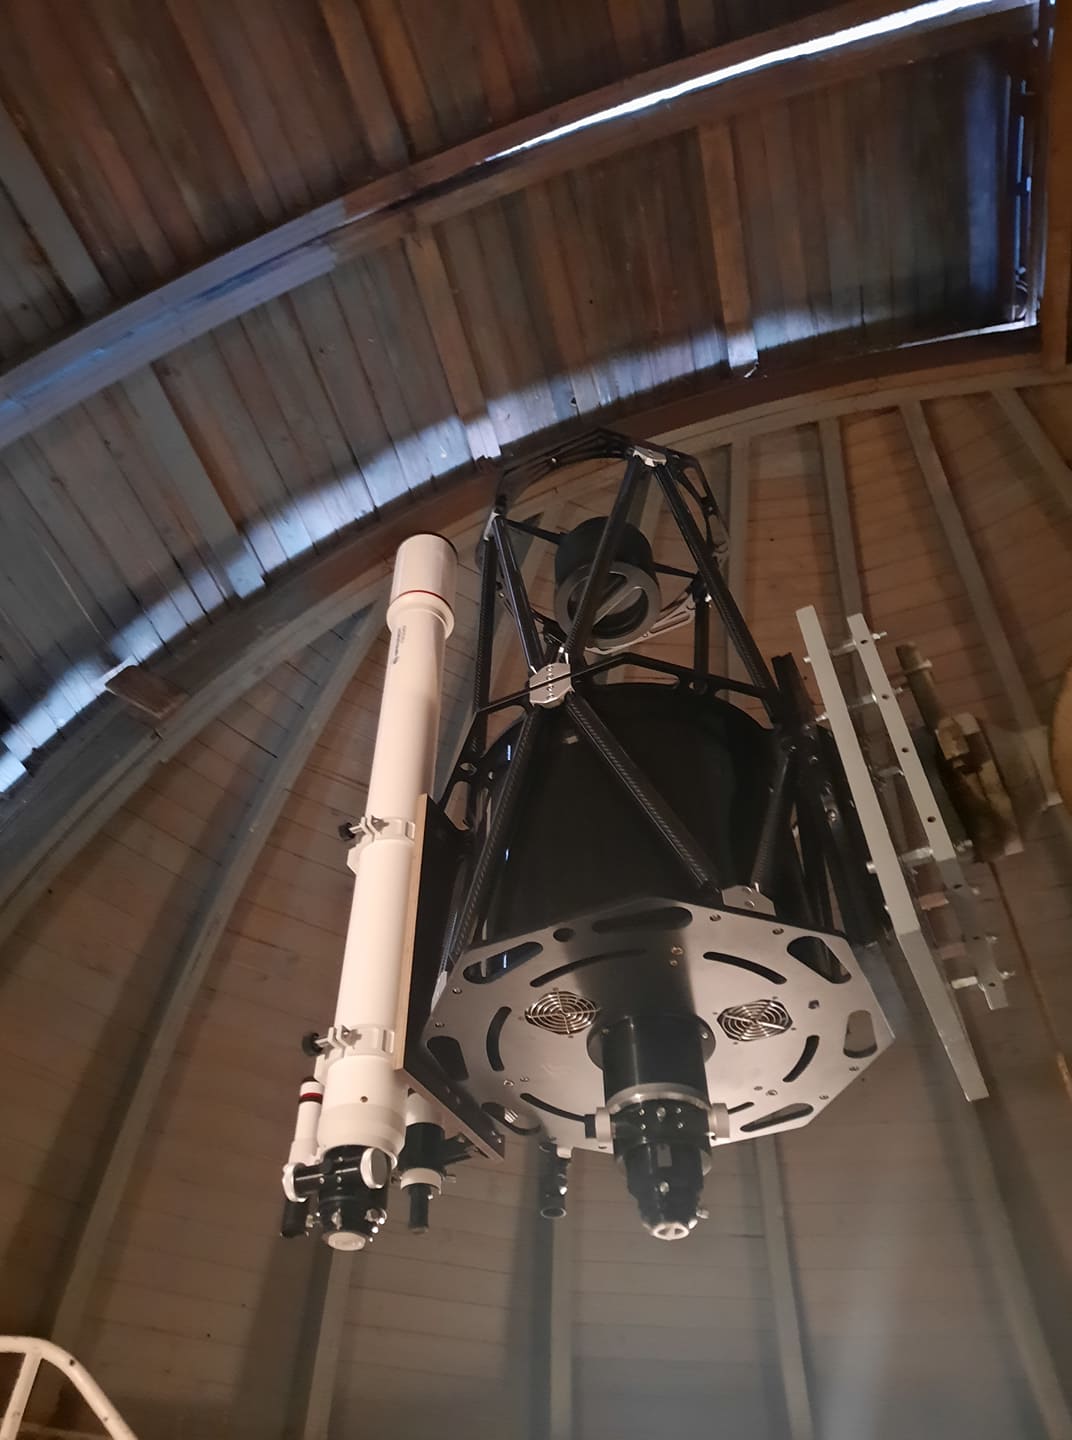 Čočkový dalekohled Bresser Messier 127/1200 a zrcadlový dalekohled o průměru 40 cm na turnovské hvězdárně v zaparkované poloze po pozorování.